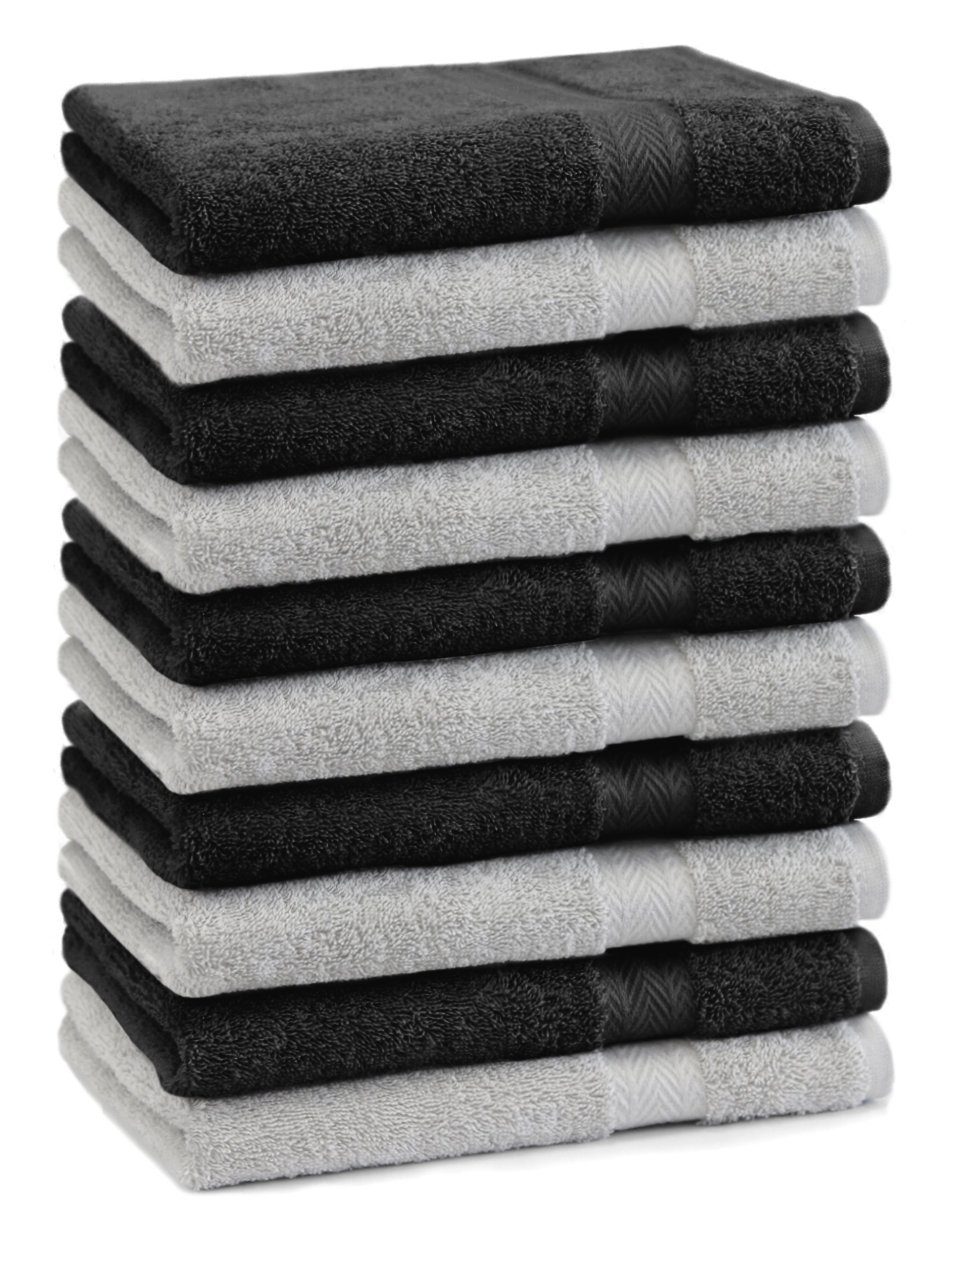 Betz Gästehandtücher 10 Stück Premium 30x50 Baumwolle und Gästetuch-Set Farbe silbergrau 100% schwarz, Baumwolle 100% Gästehandtücher cm